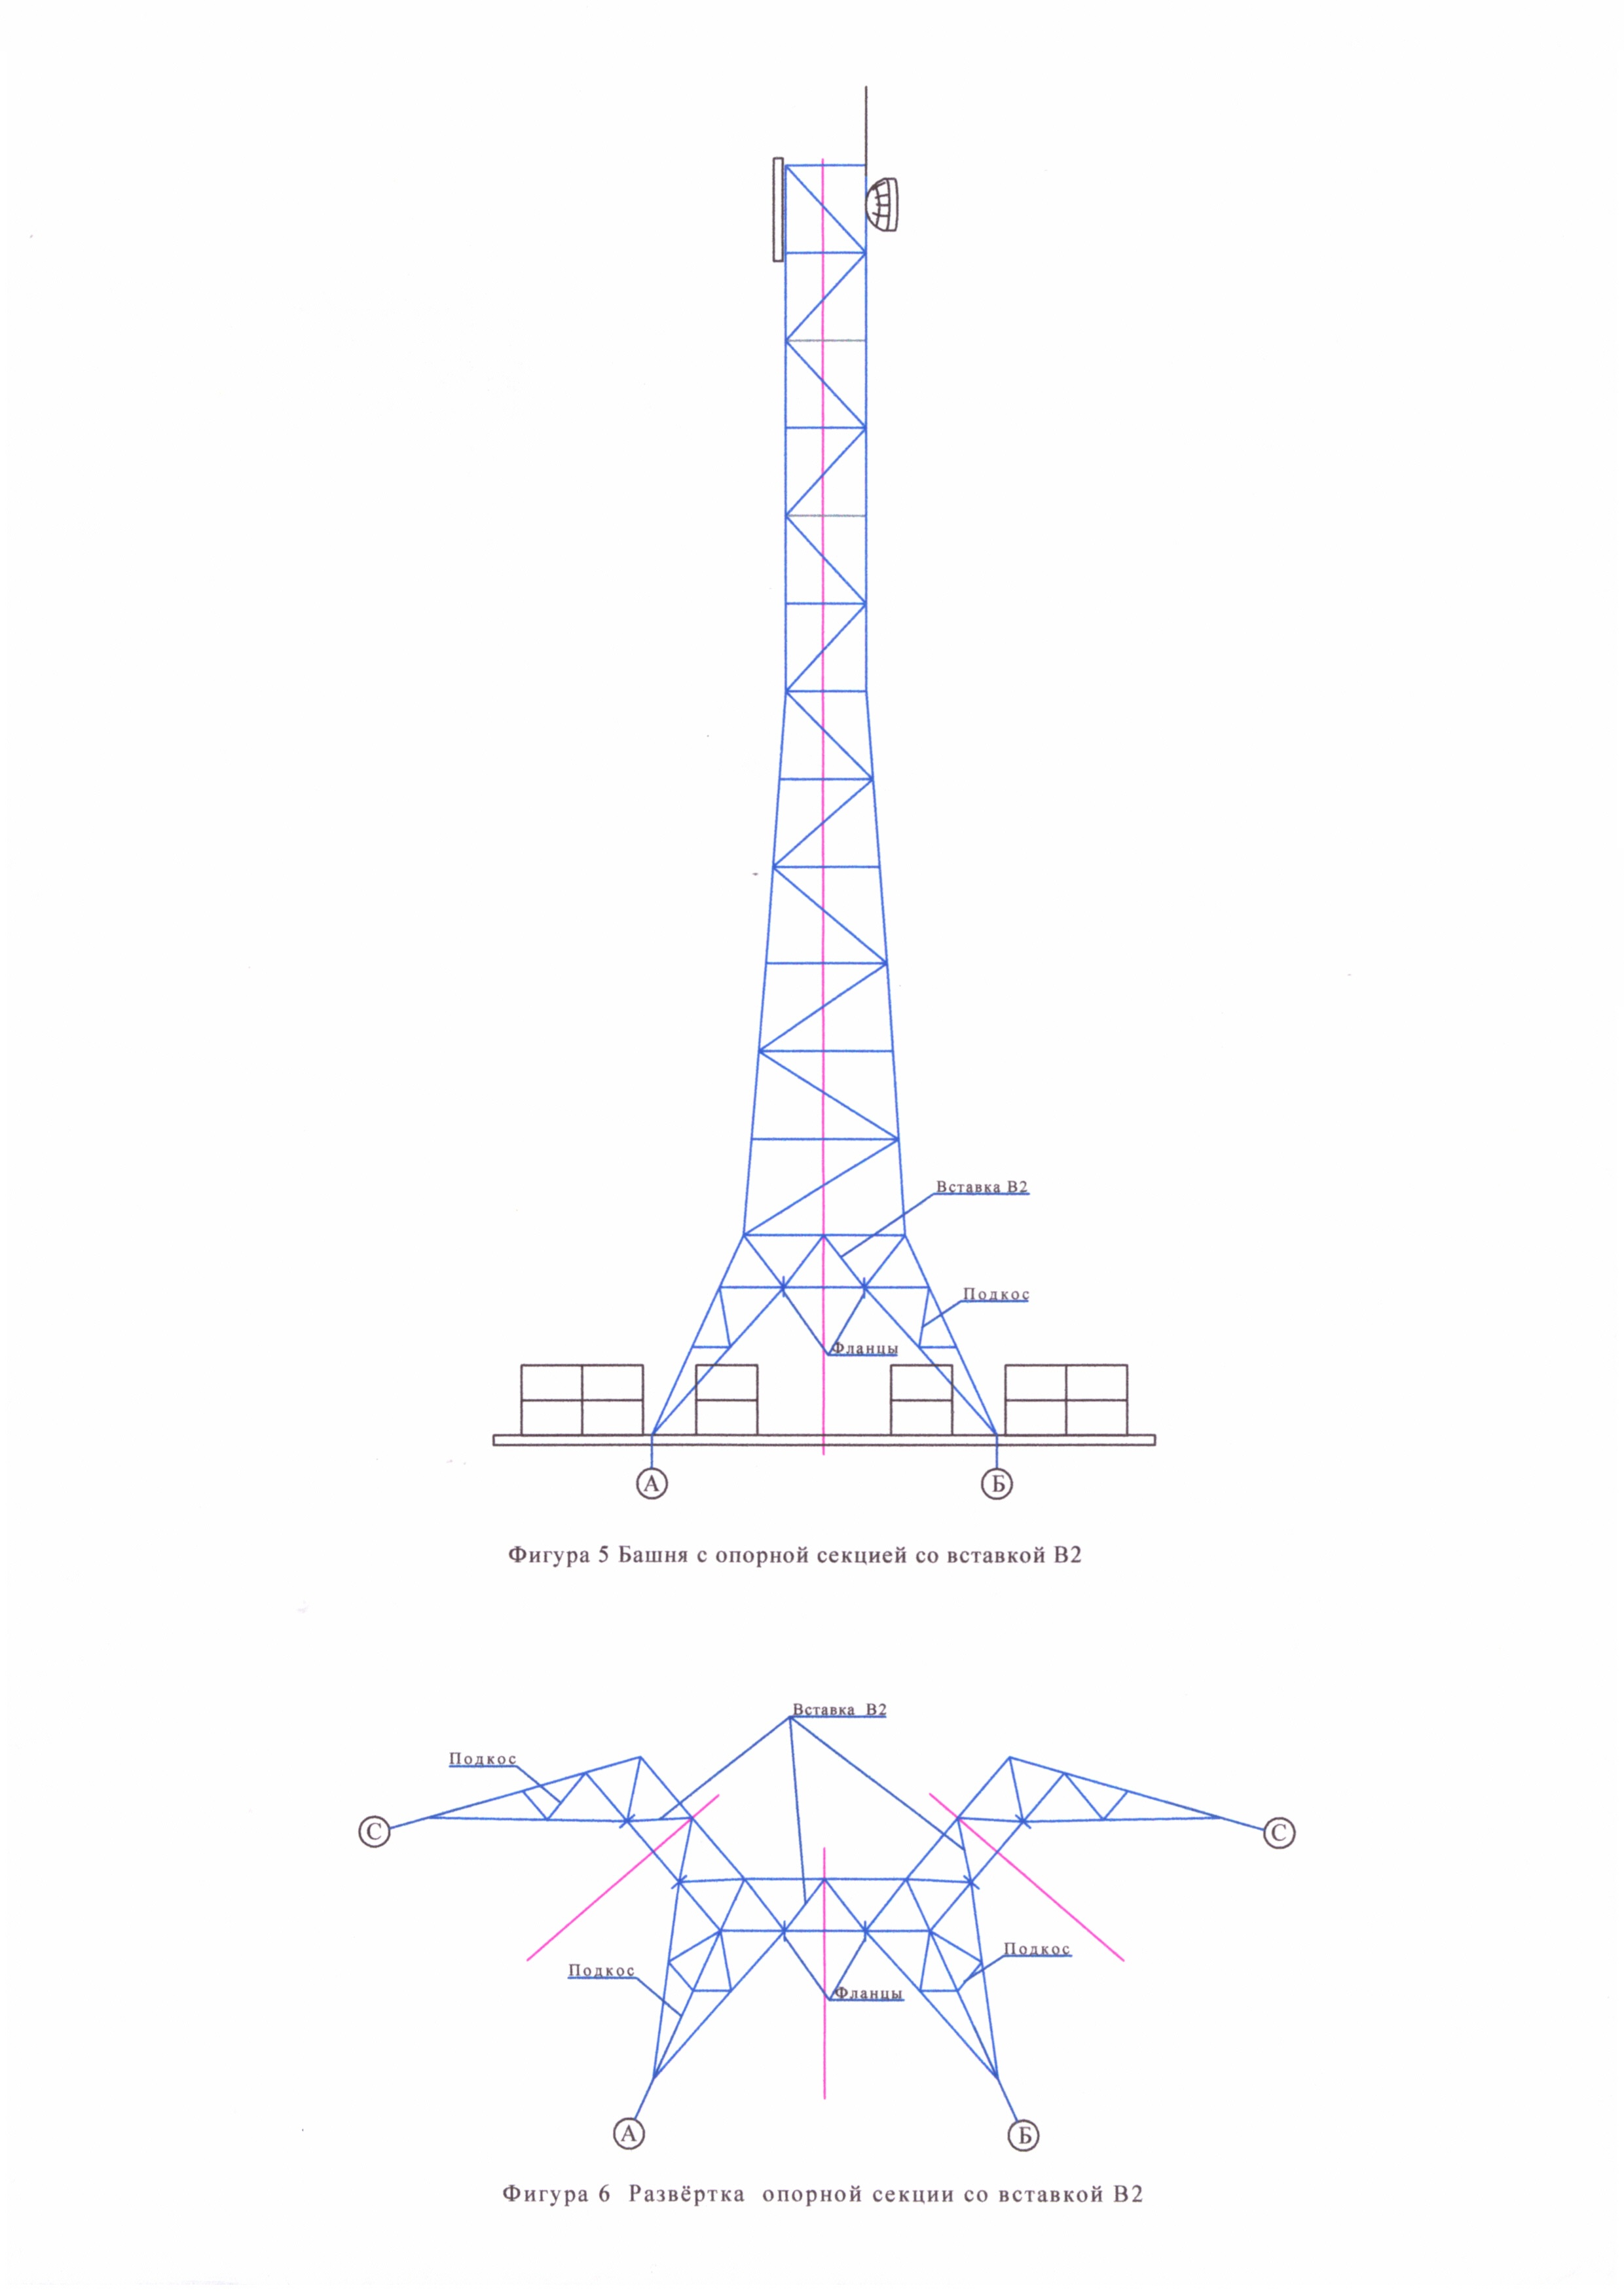 Трёхгранная решетчатая сборно-разборная башня высотой до 50 м на пригрузах с изменяемой опорной секцией